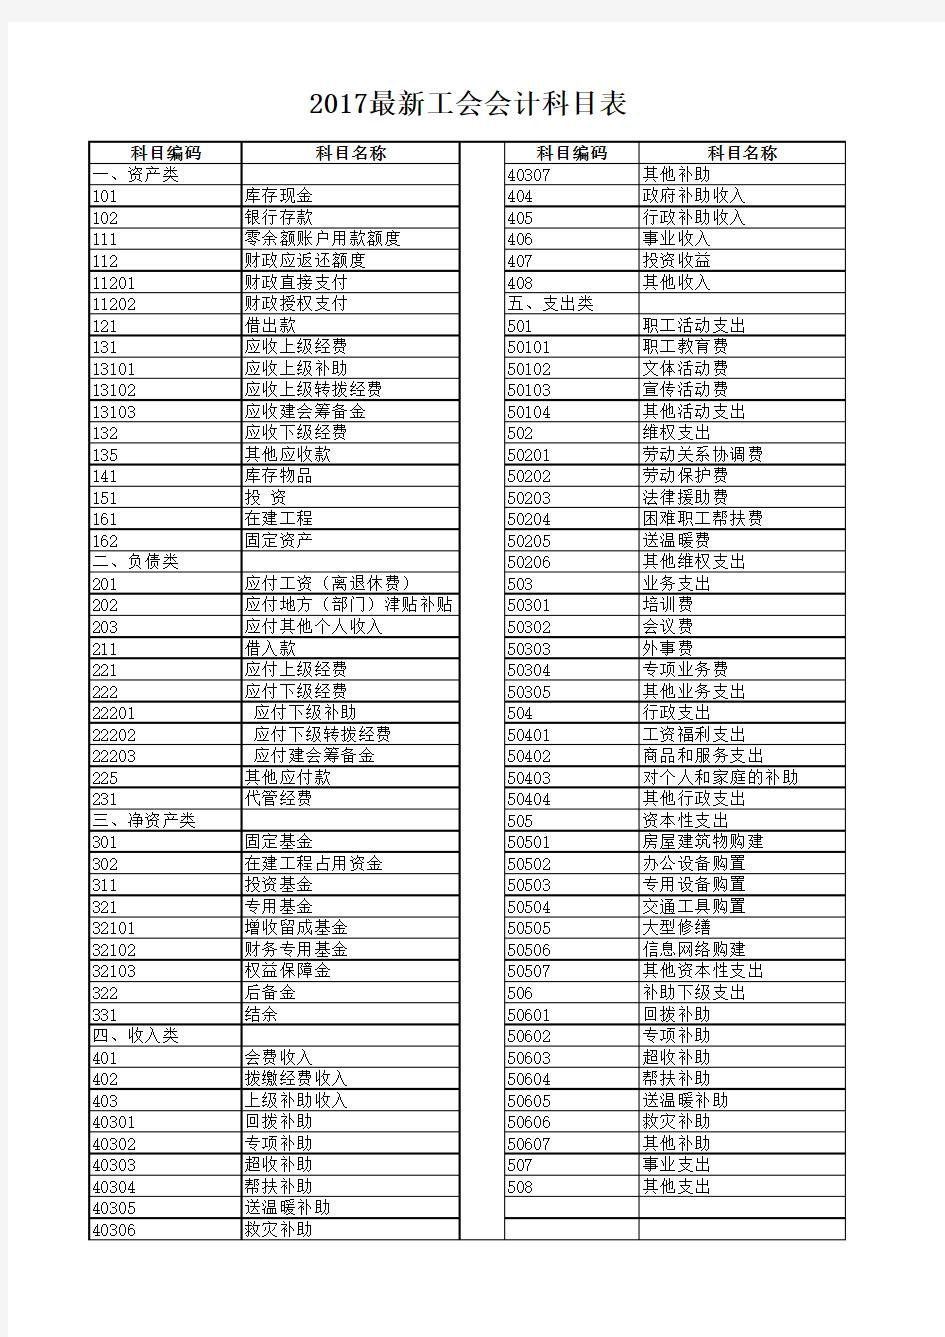 2018工会会计科目表名称编号表